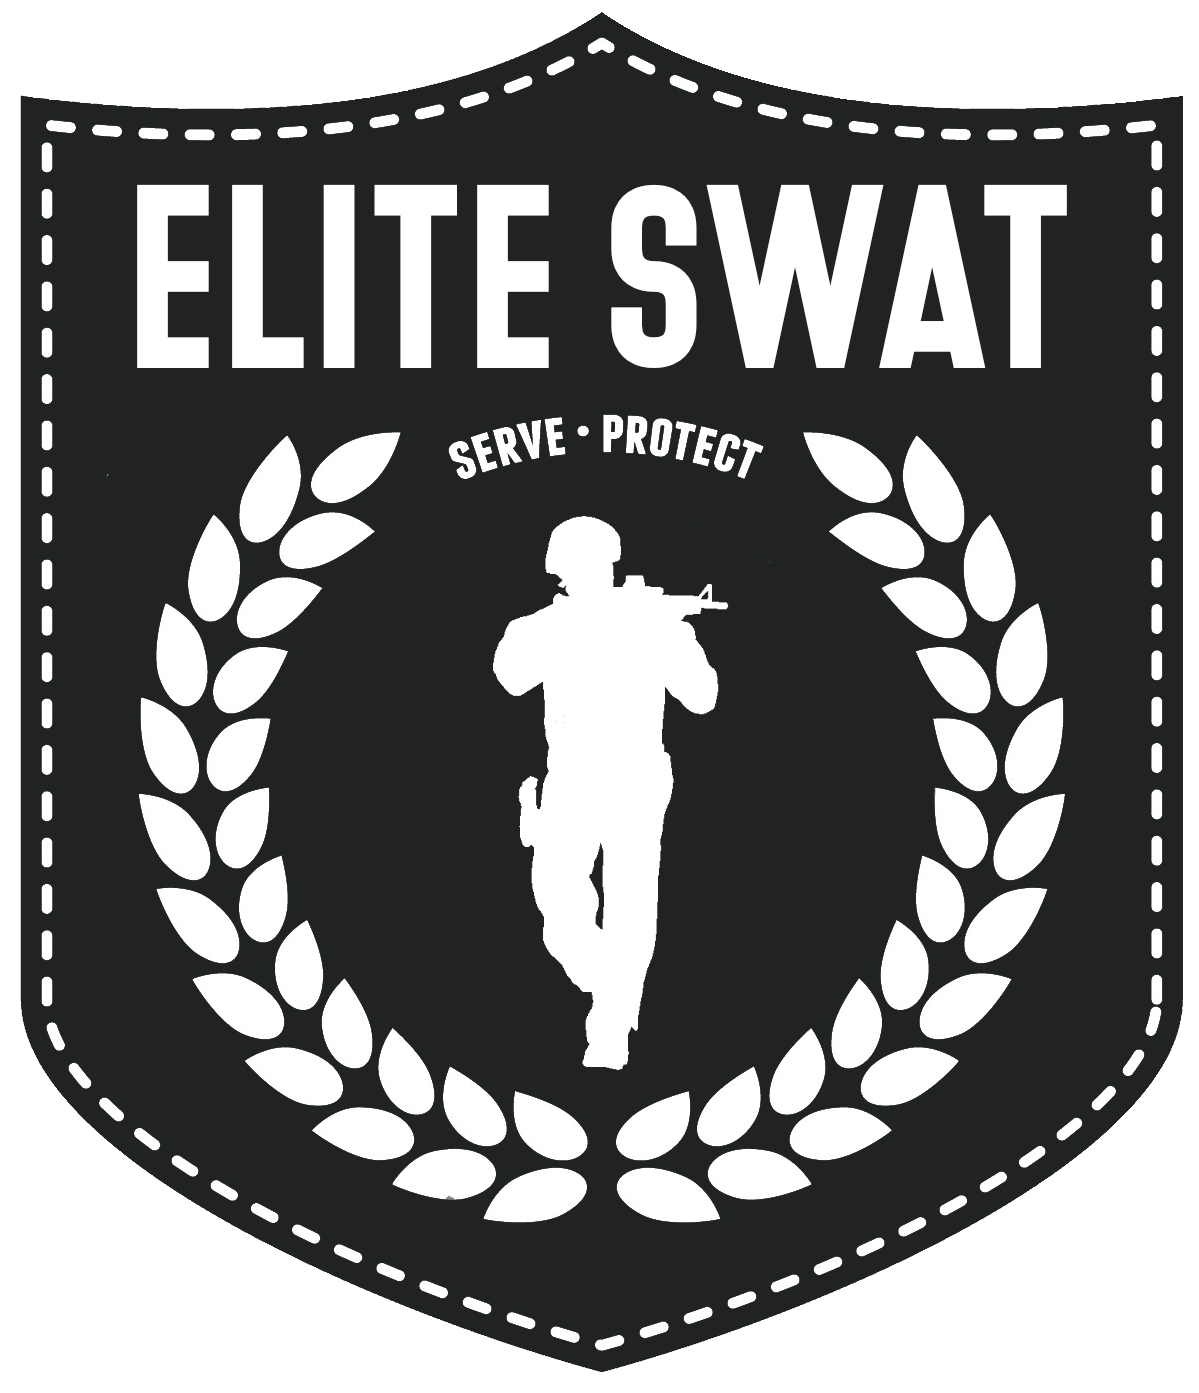 Elite SWAT logo